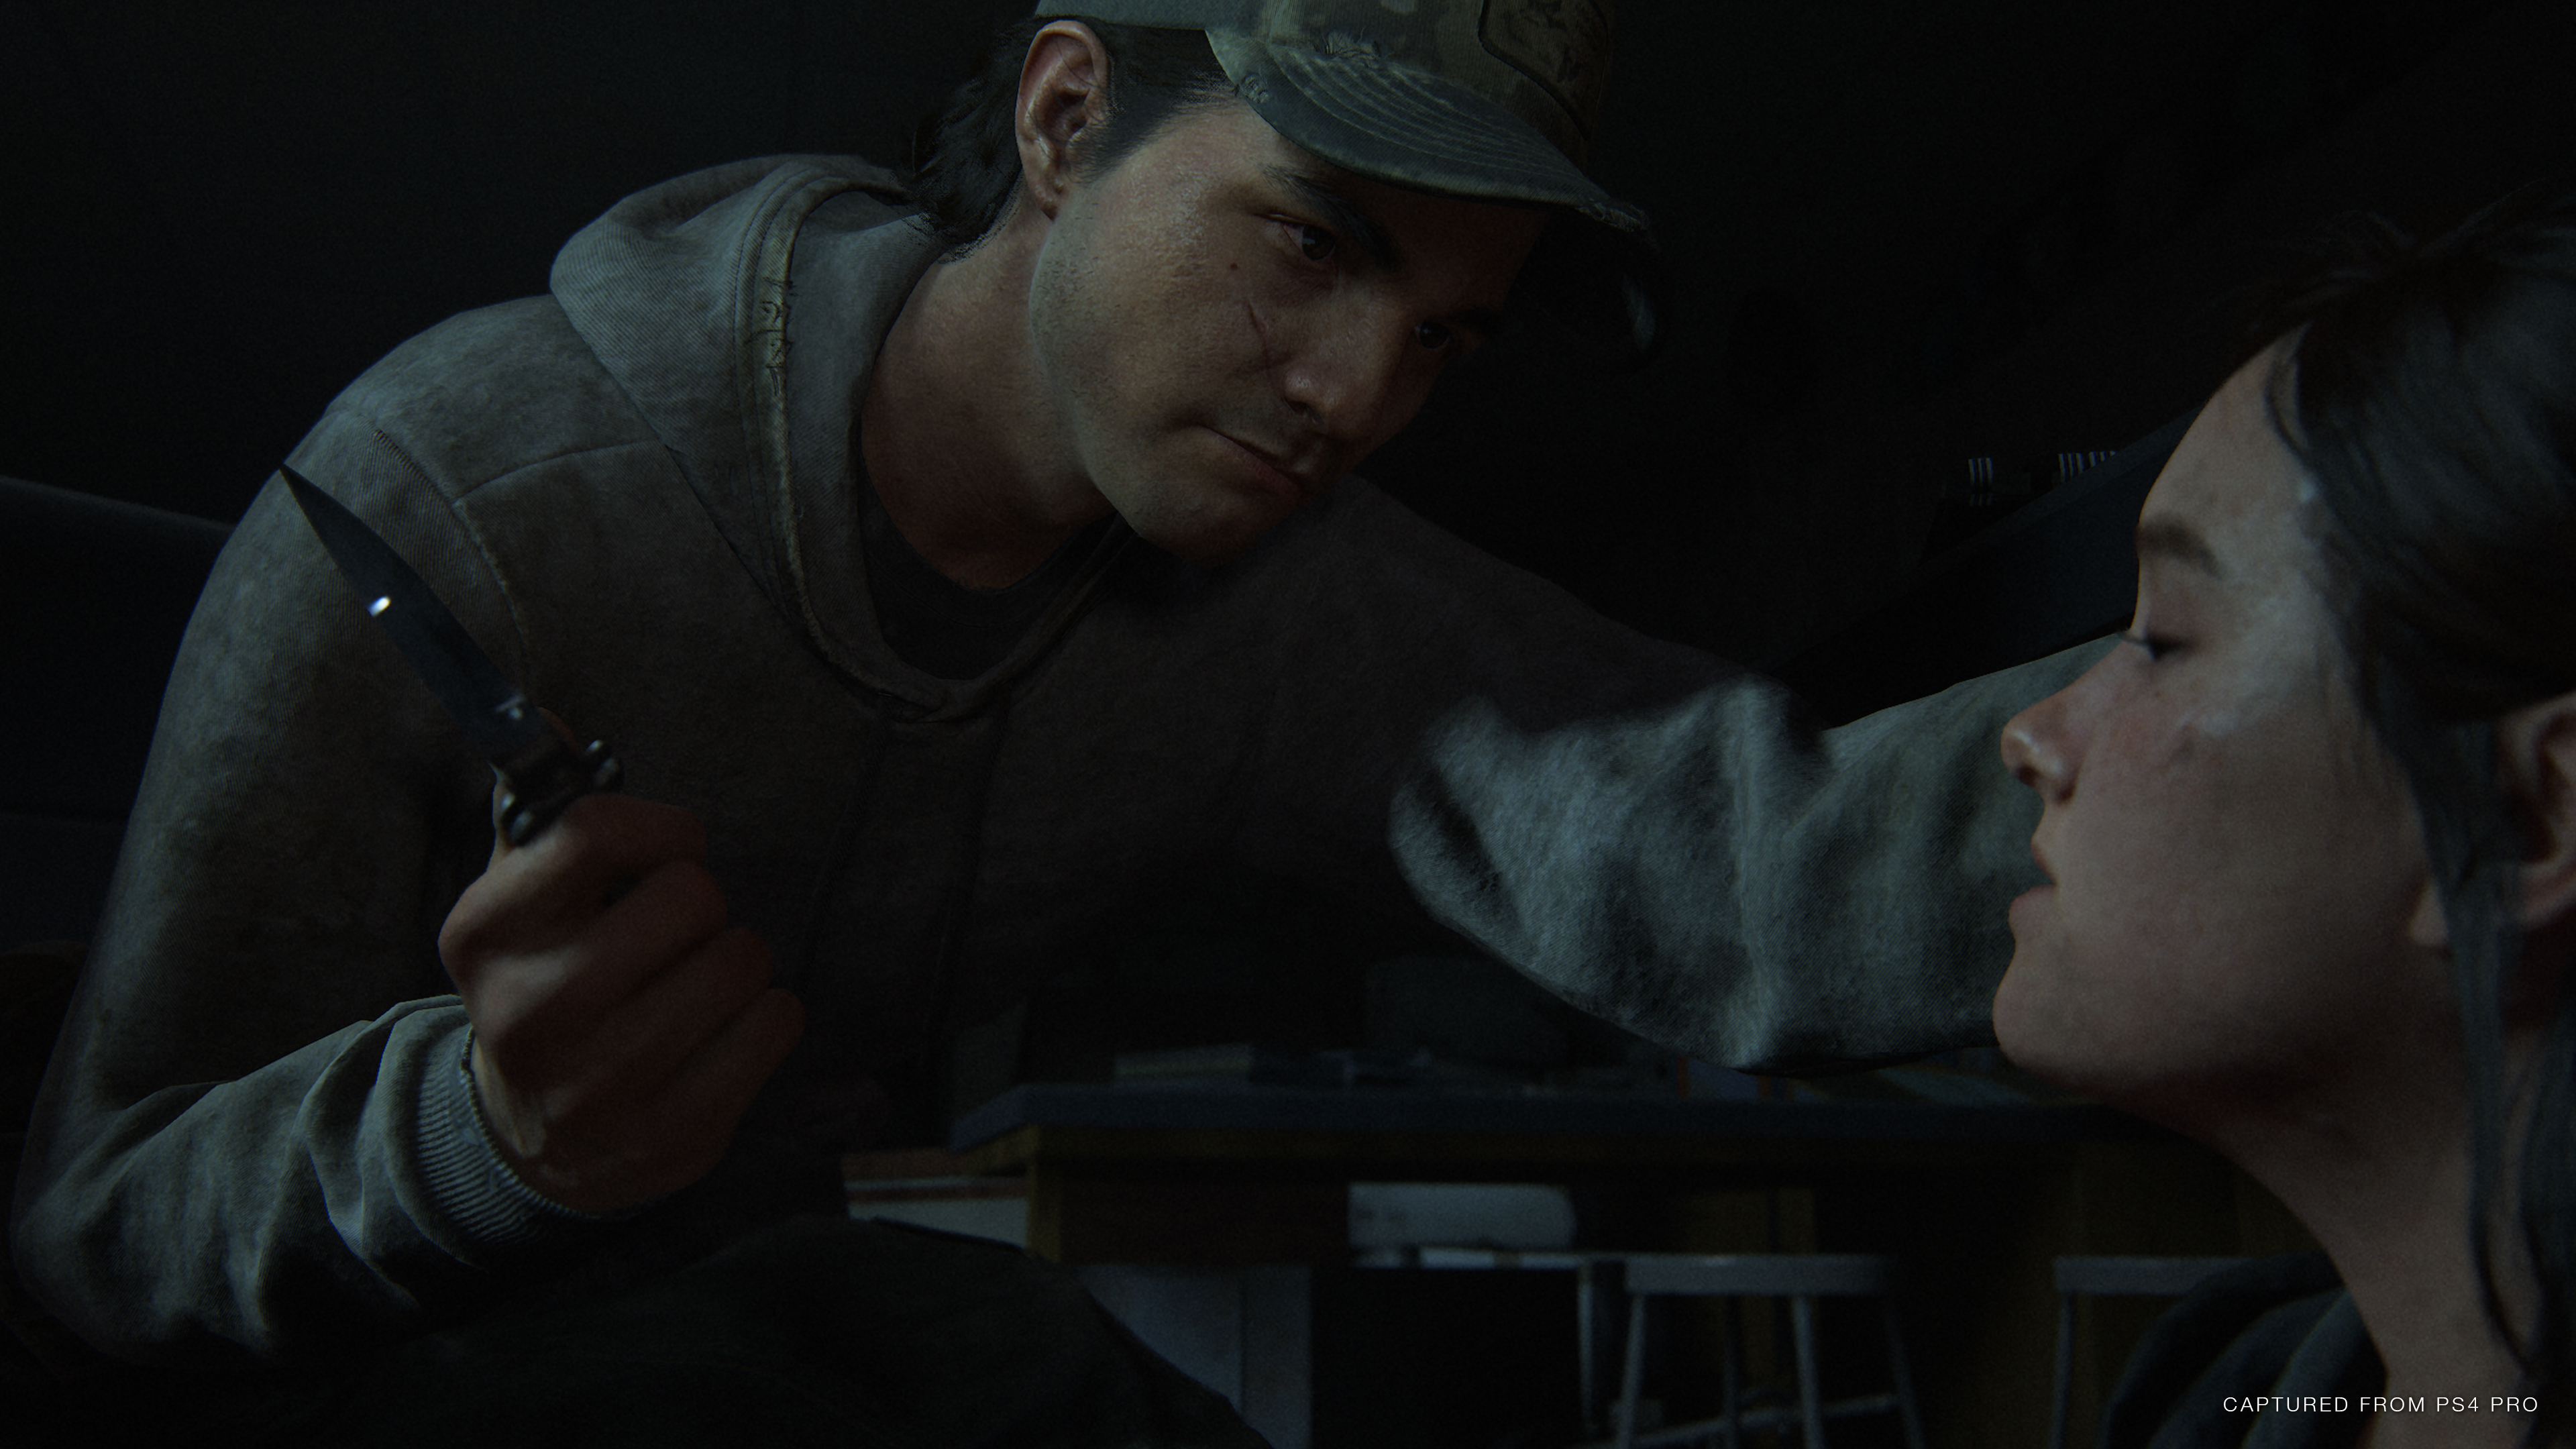 Pré-load de The Last of Us Part II está disponível; jogo é o exclusivo mais  bem avaliado de PS4 - PSX Brasil